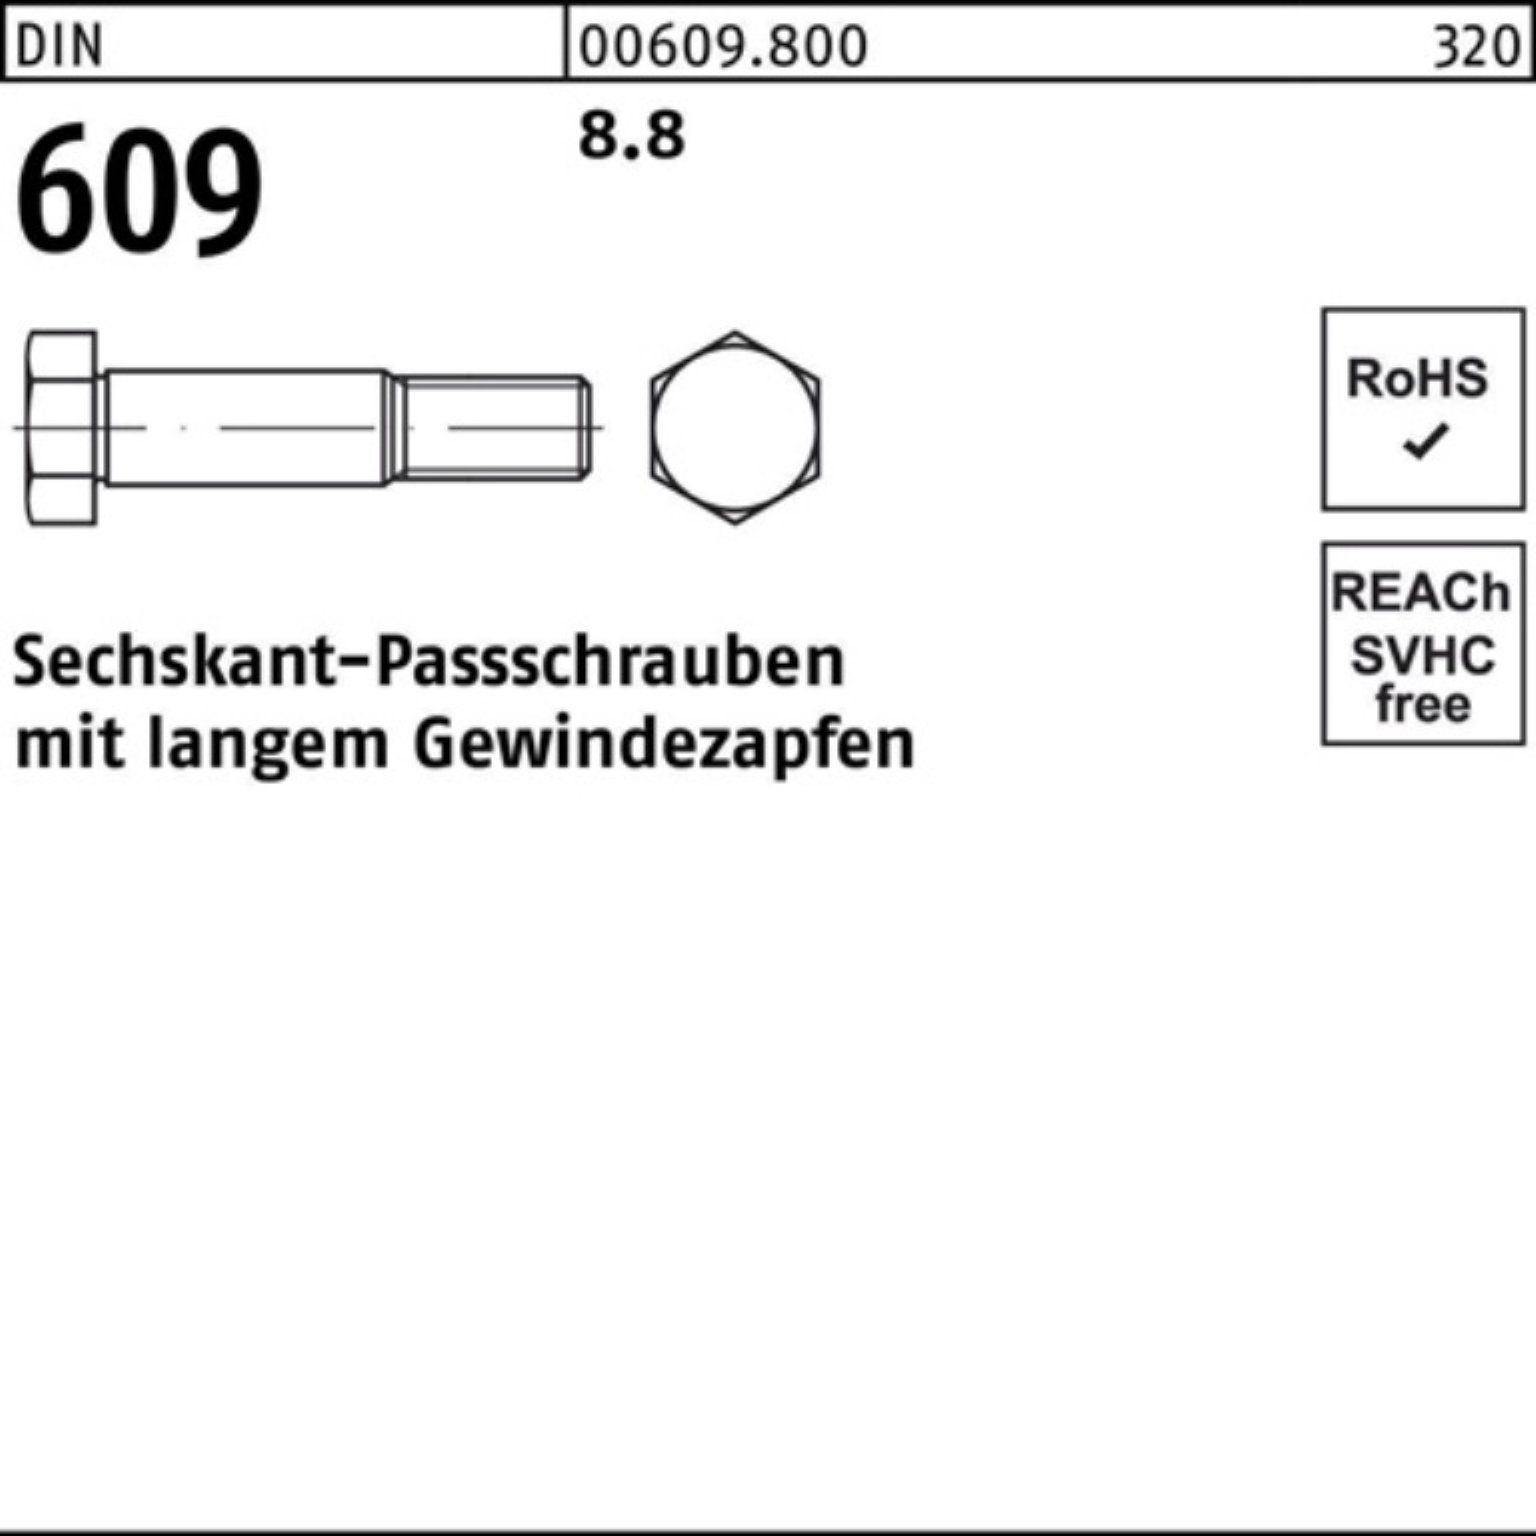 Klassische Marke Reyher Schraube 100er Sechskantpassschraube Pack M16x Gewindezapfen 609 DIN langem 60